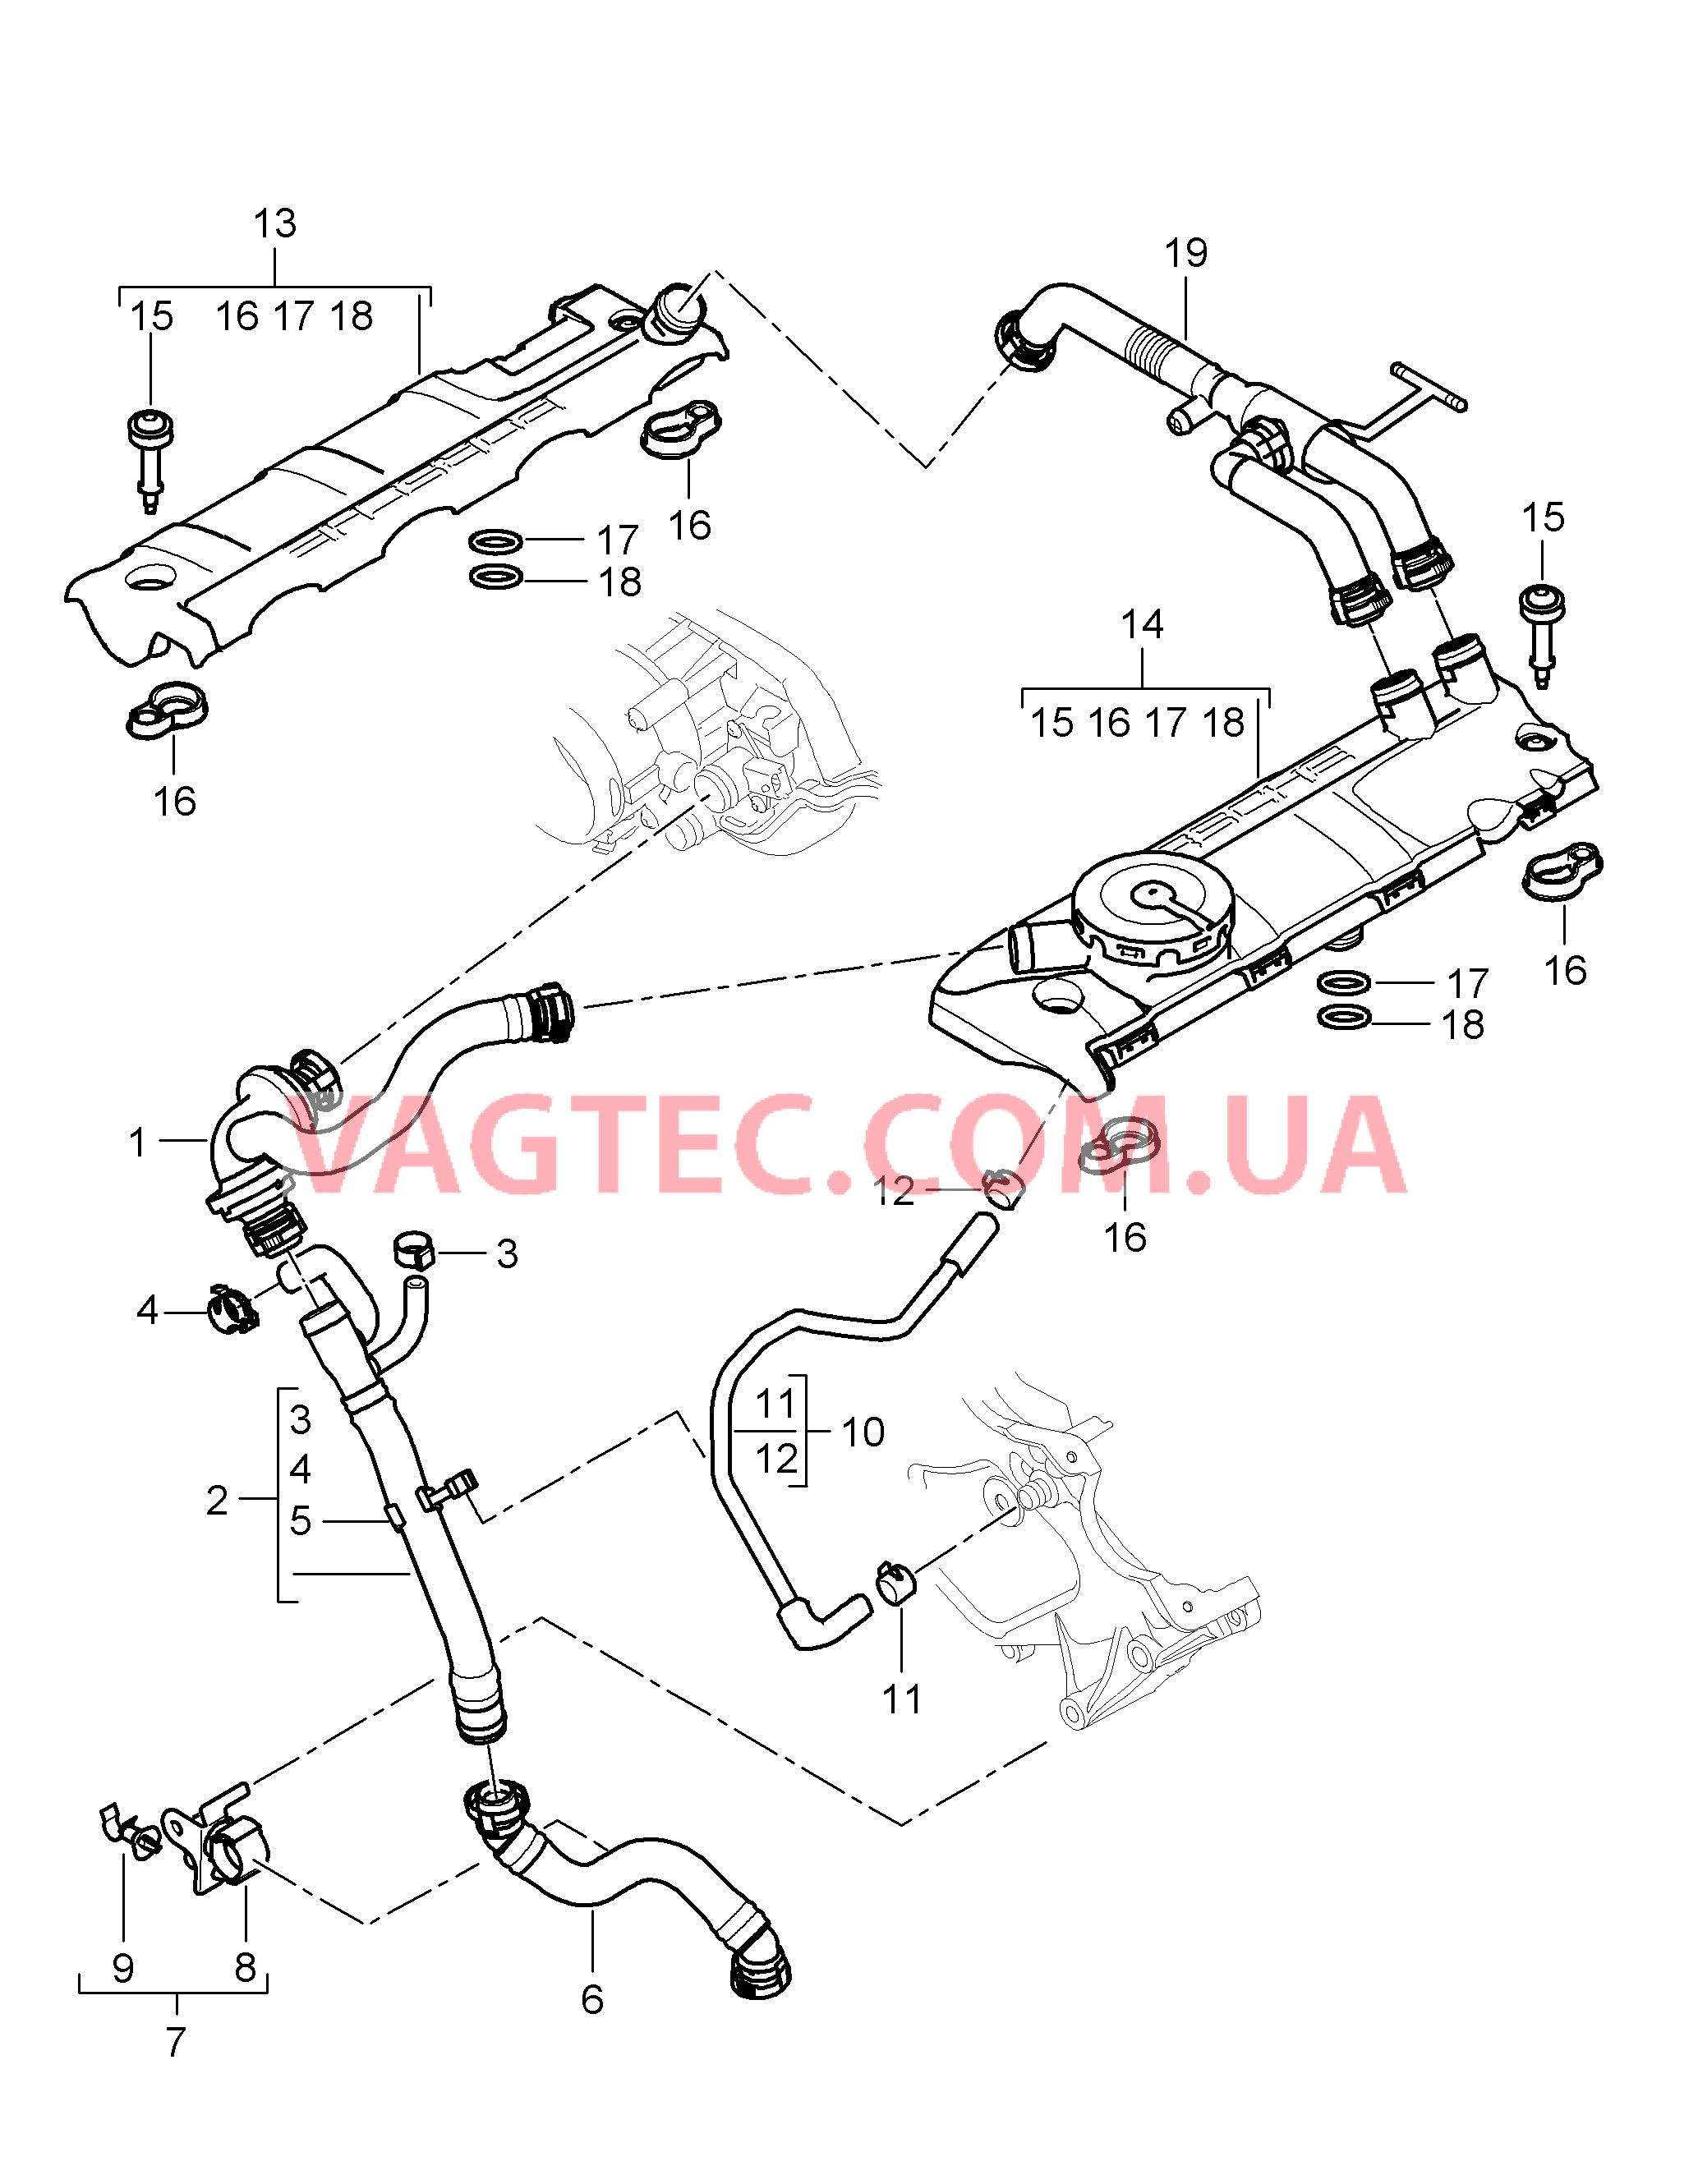 107-001 Кривошипный механизм, Система вентиляции
						
						M48.01/51 для PORSCHE Cayenne 2007-2010